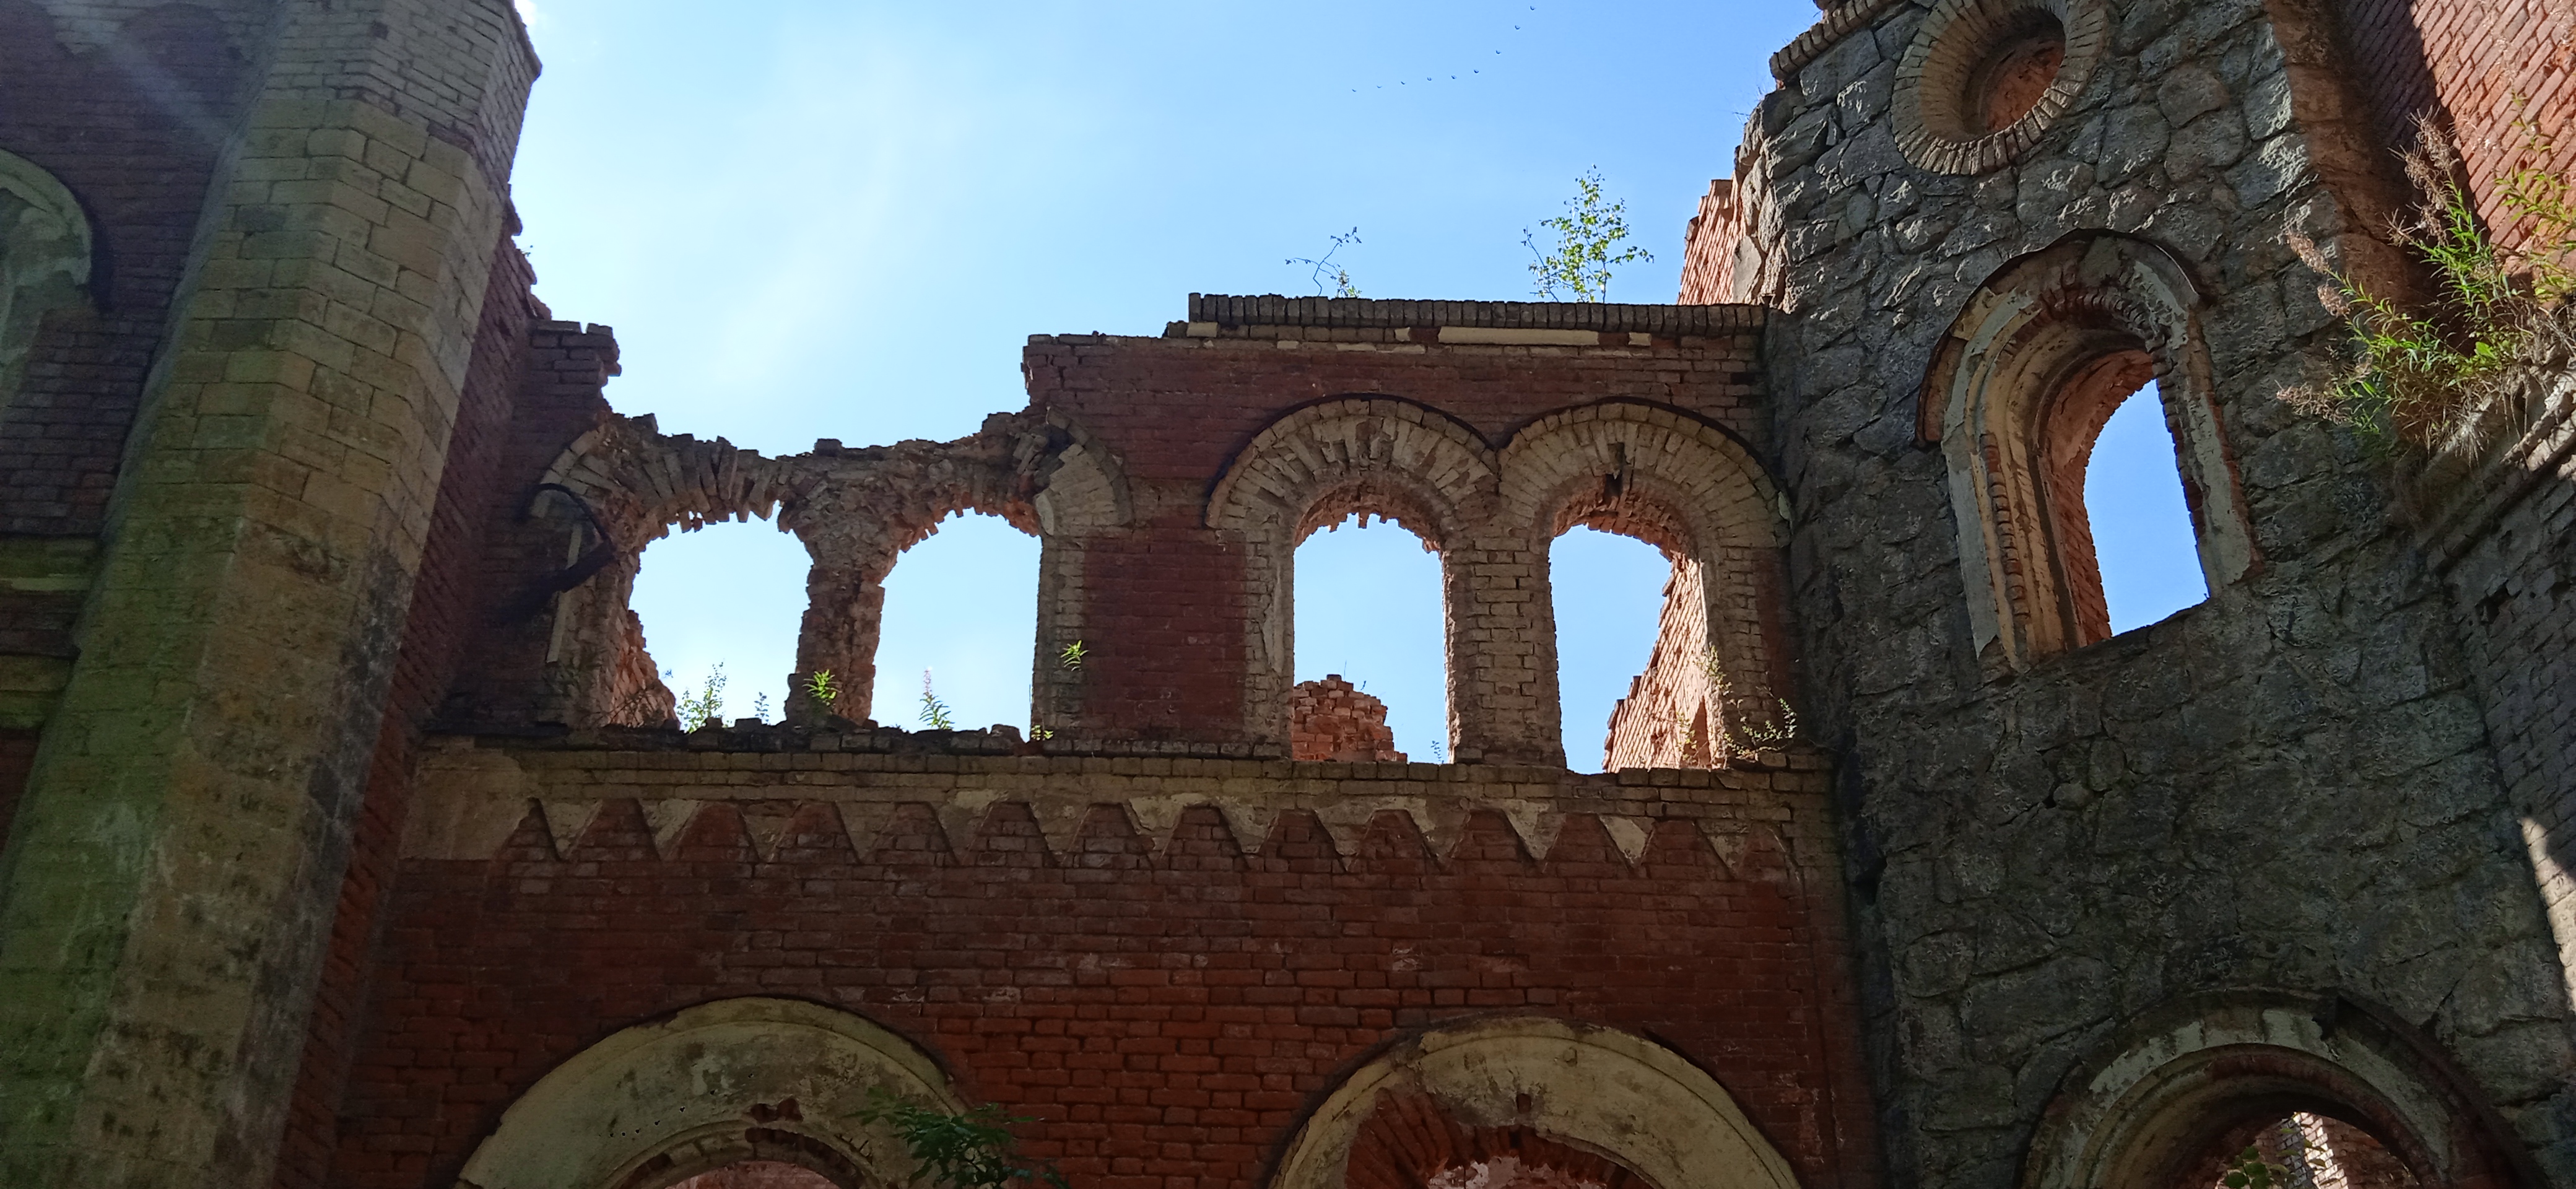 Руины усадьбы Врангеля в Торосово